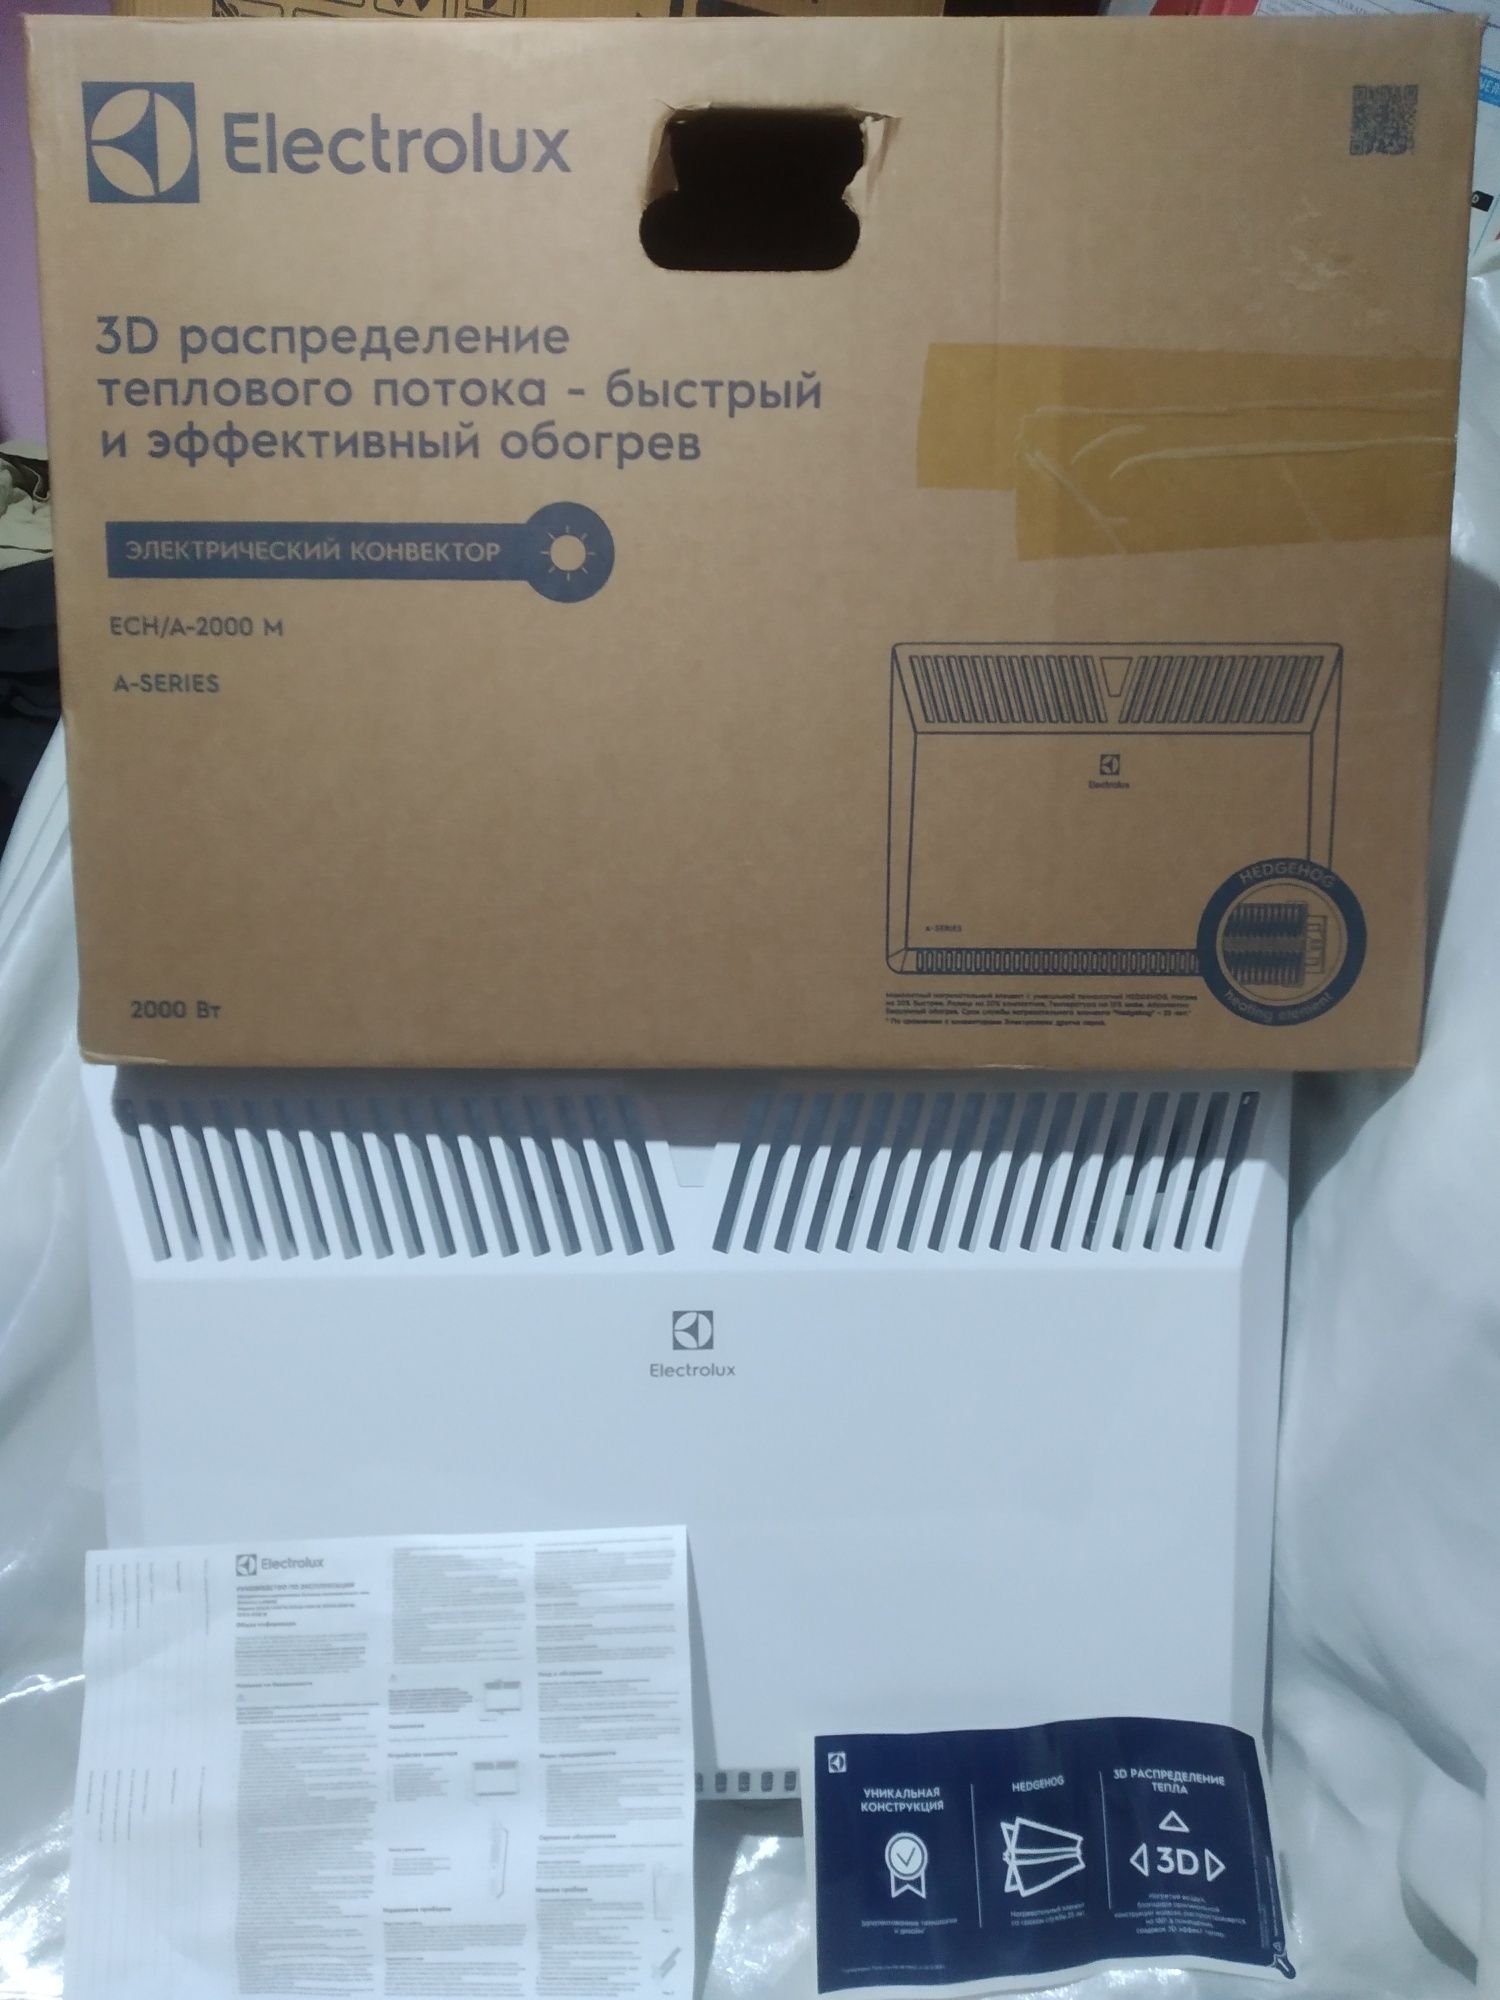 Обогреватель "Electrolux" ,Россия,3D электрический конвекционного типа